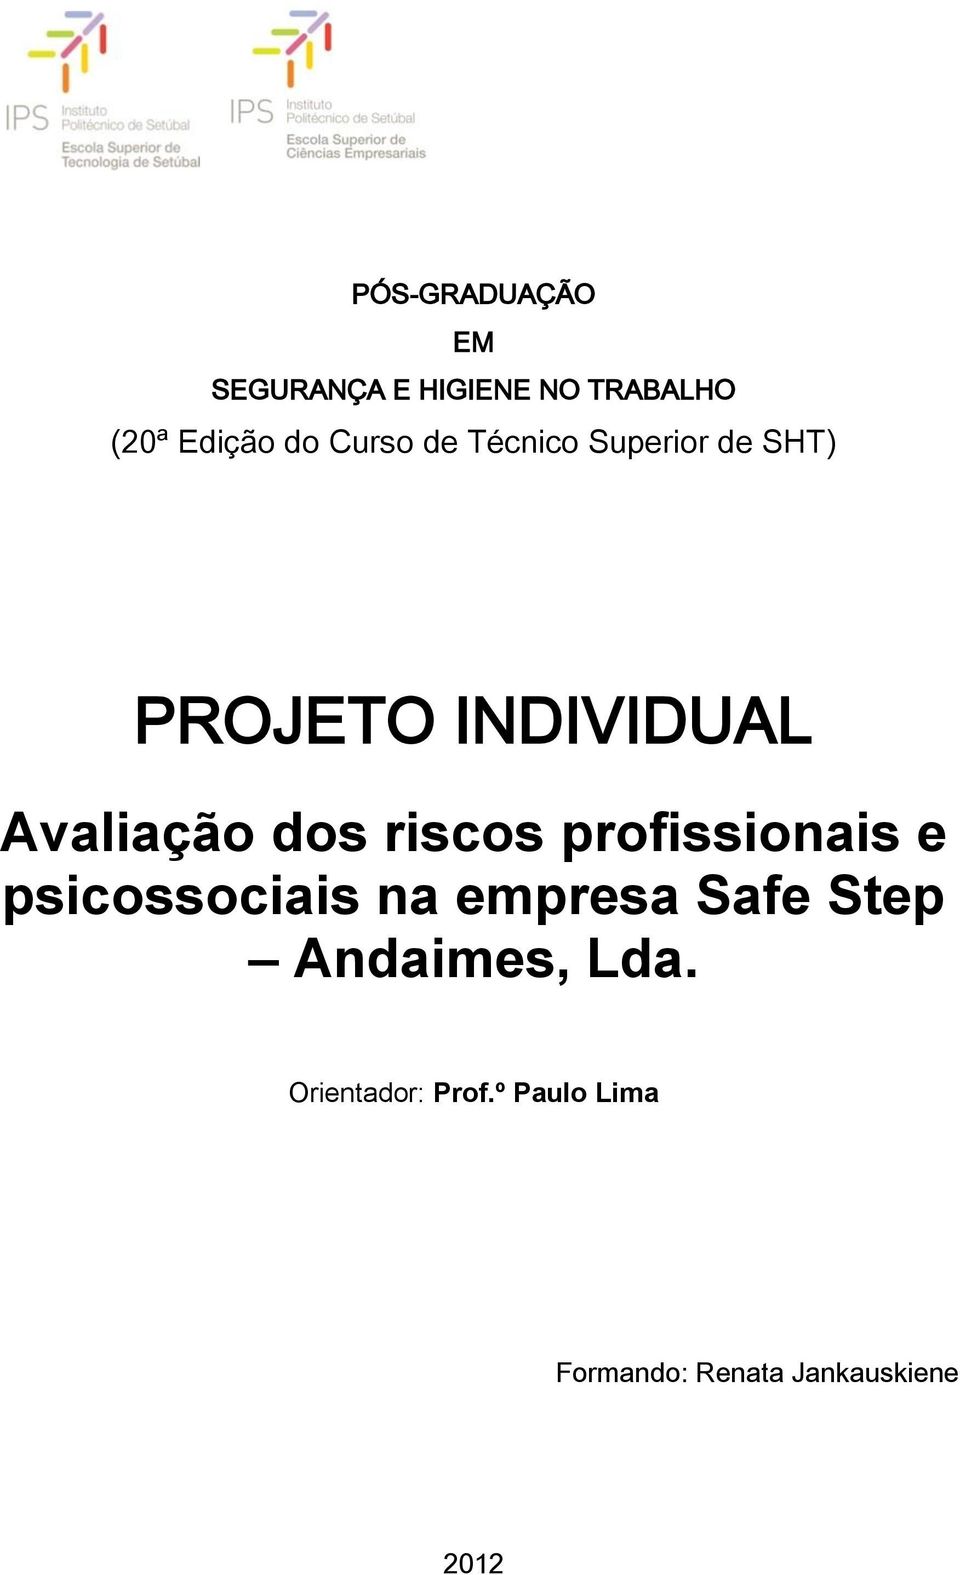 riscos profissionais e psicossociais na empresa Safe Step